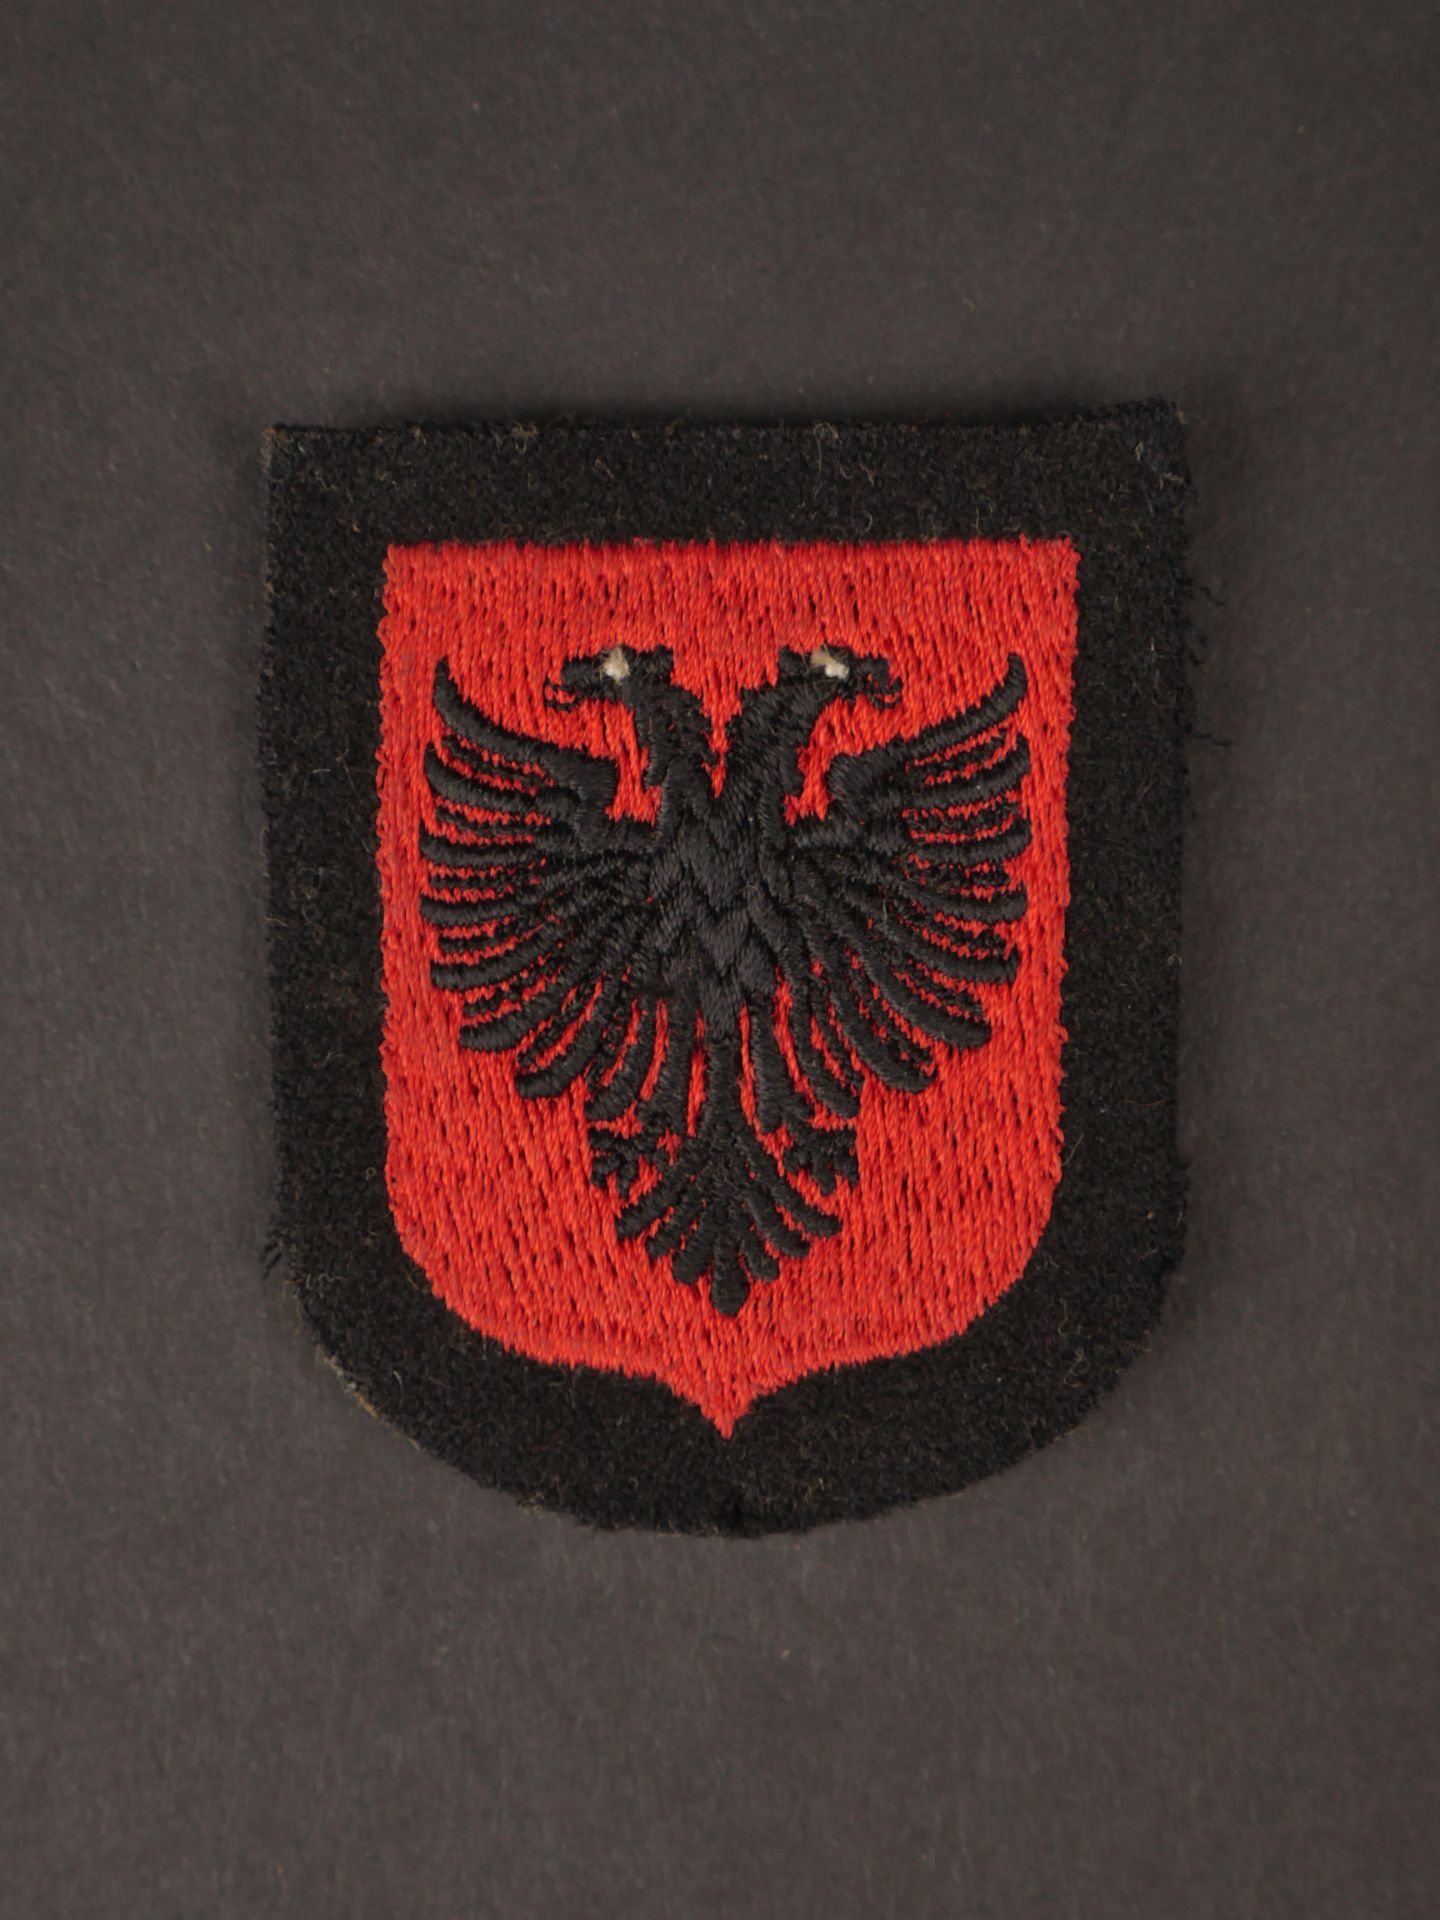 Insigne SS Albanais. Albanian SS insignia.